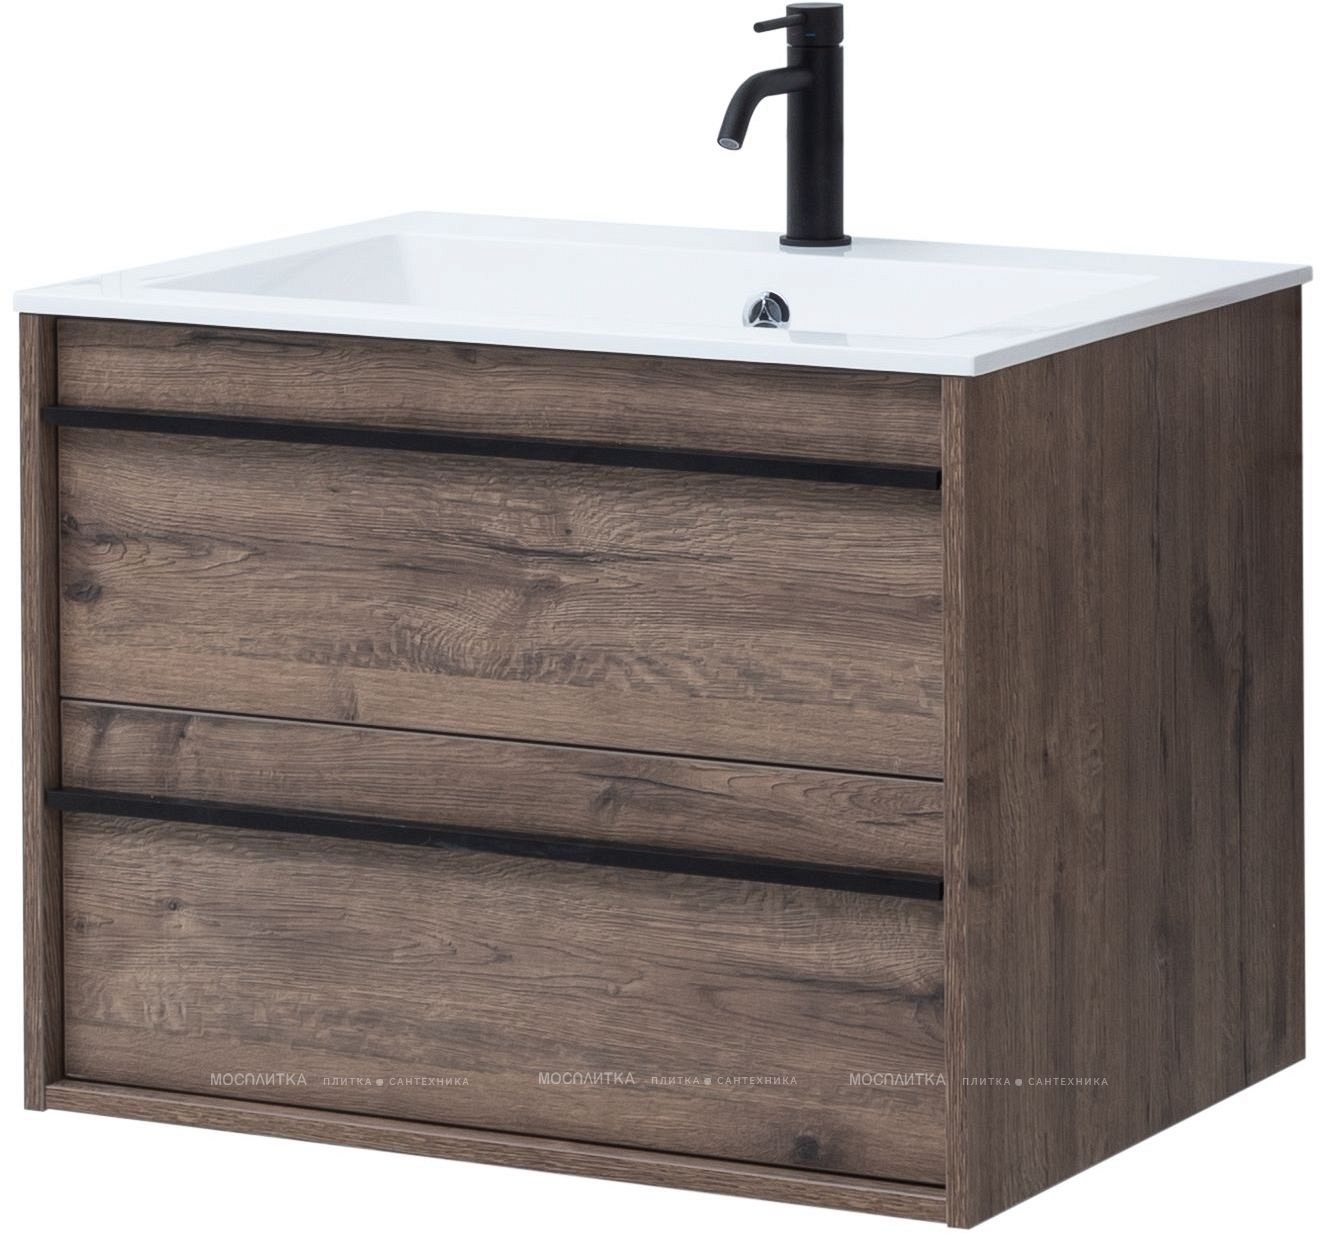 Комплект мебели для ванной Aquanet Lino 70 см, черная, коричневая - изображение 4